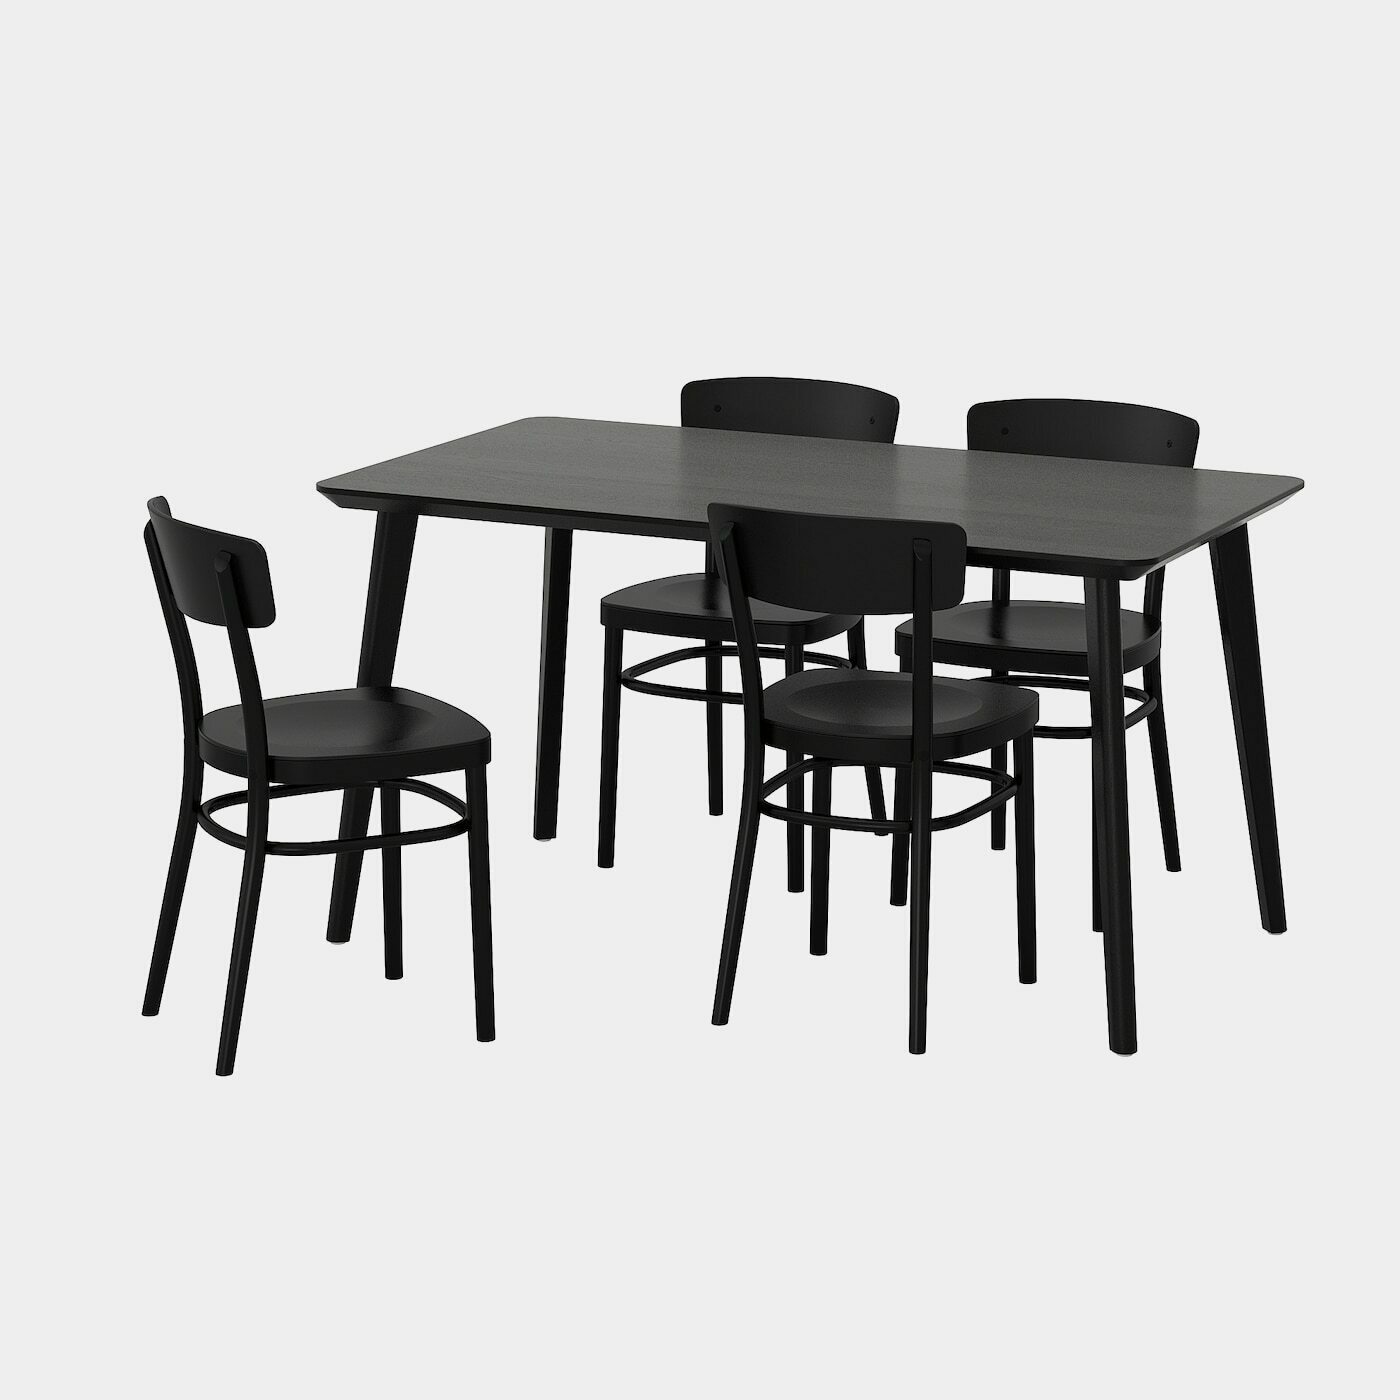 LISABO / IDOLF Tisch und 4 Stühle  - Essplatzgruppe - Möbel Ideen für dein Zuhause von Home Trends. Möbel Trends von Social Media Influencer für dein Skandi Zuhause.